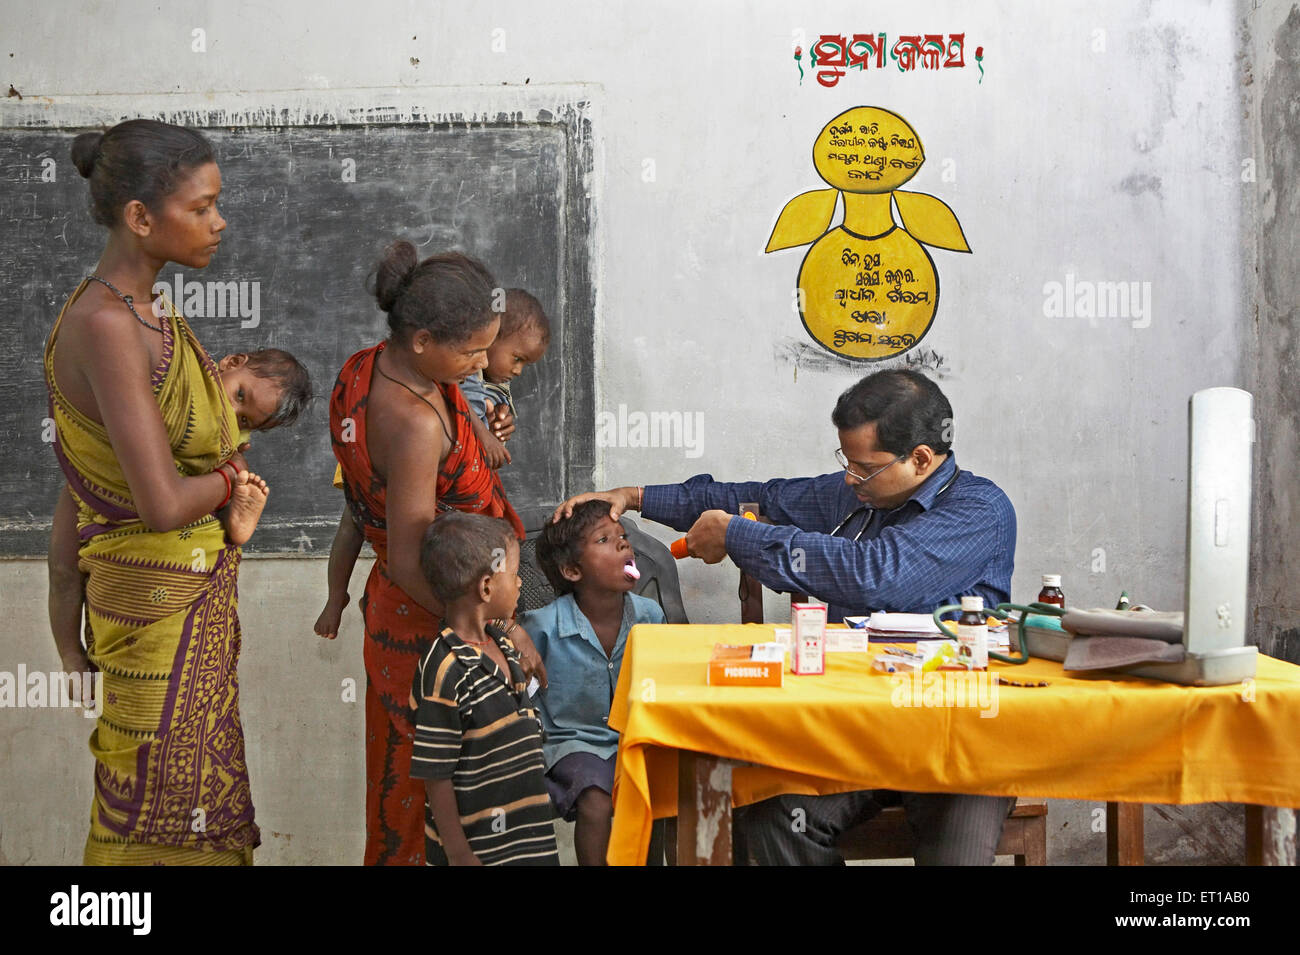 Arzt untersucht die Gesundheit der armen Dorfbewohner im Health Check up camp Initiative ngo chinmaya Organisation Indien gestartet - rva 162391 Stockfoto